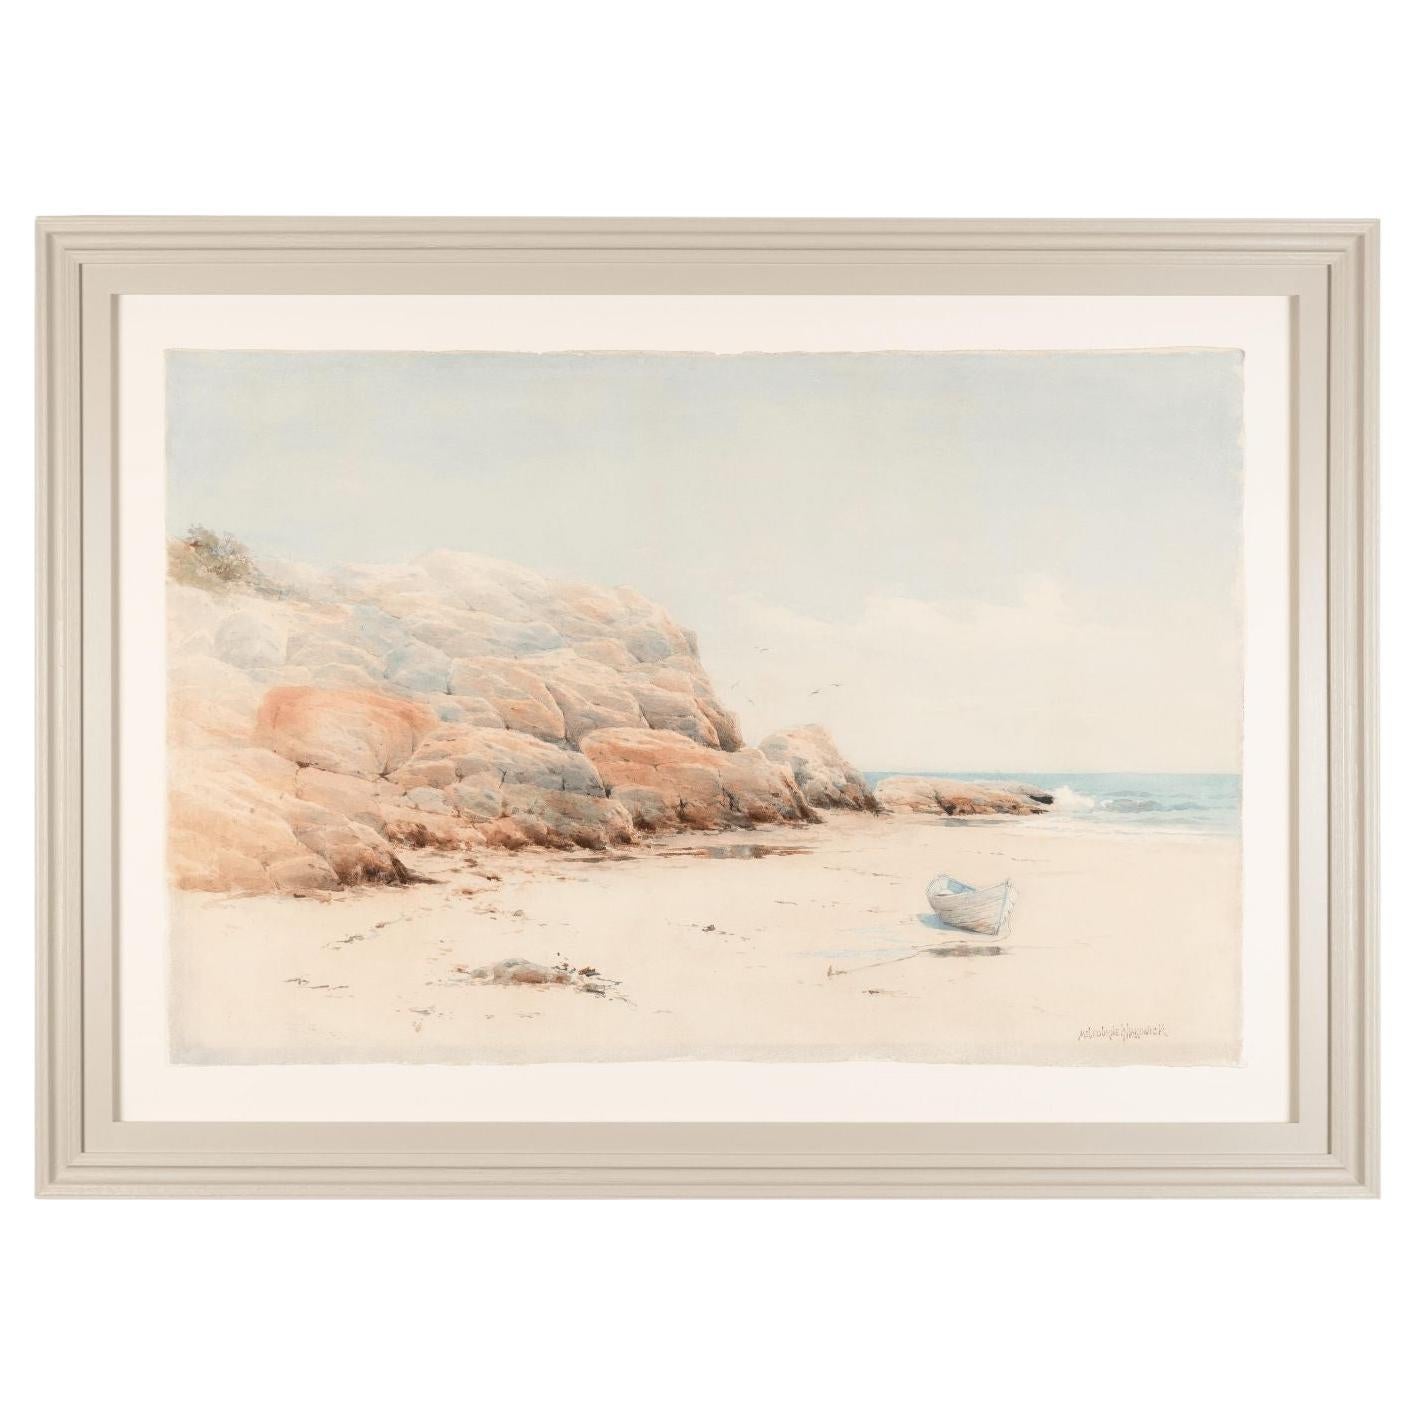 Peinture à l'aquarelle du Massachusetts de la fin du XIXe siècle - Shoreline